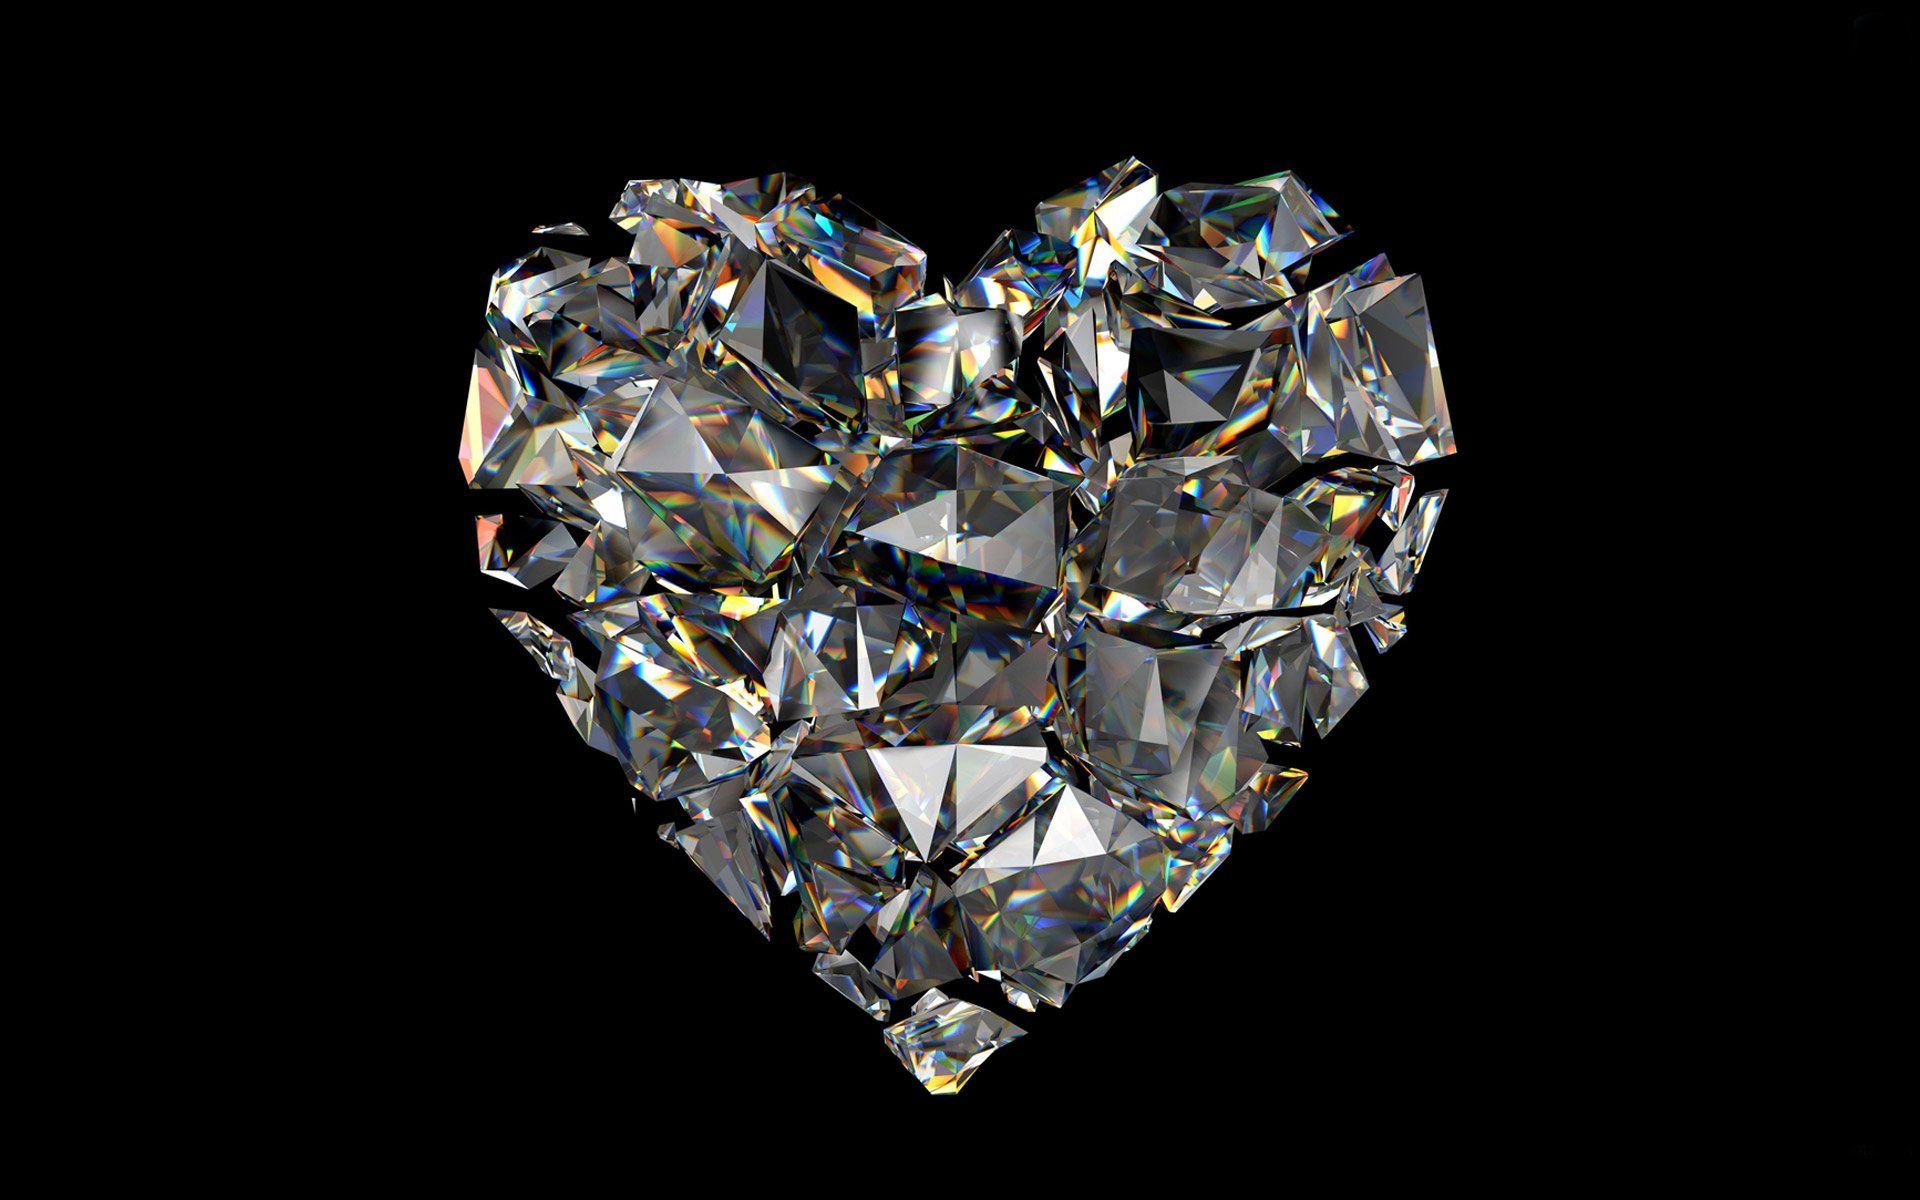 Fondos de diamantes - Los mejores fondos de diamantes gratis - WallpaperAccess